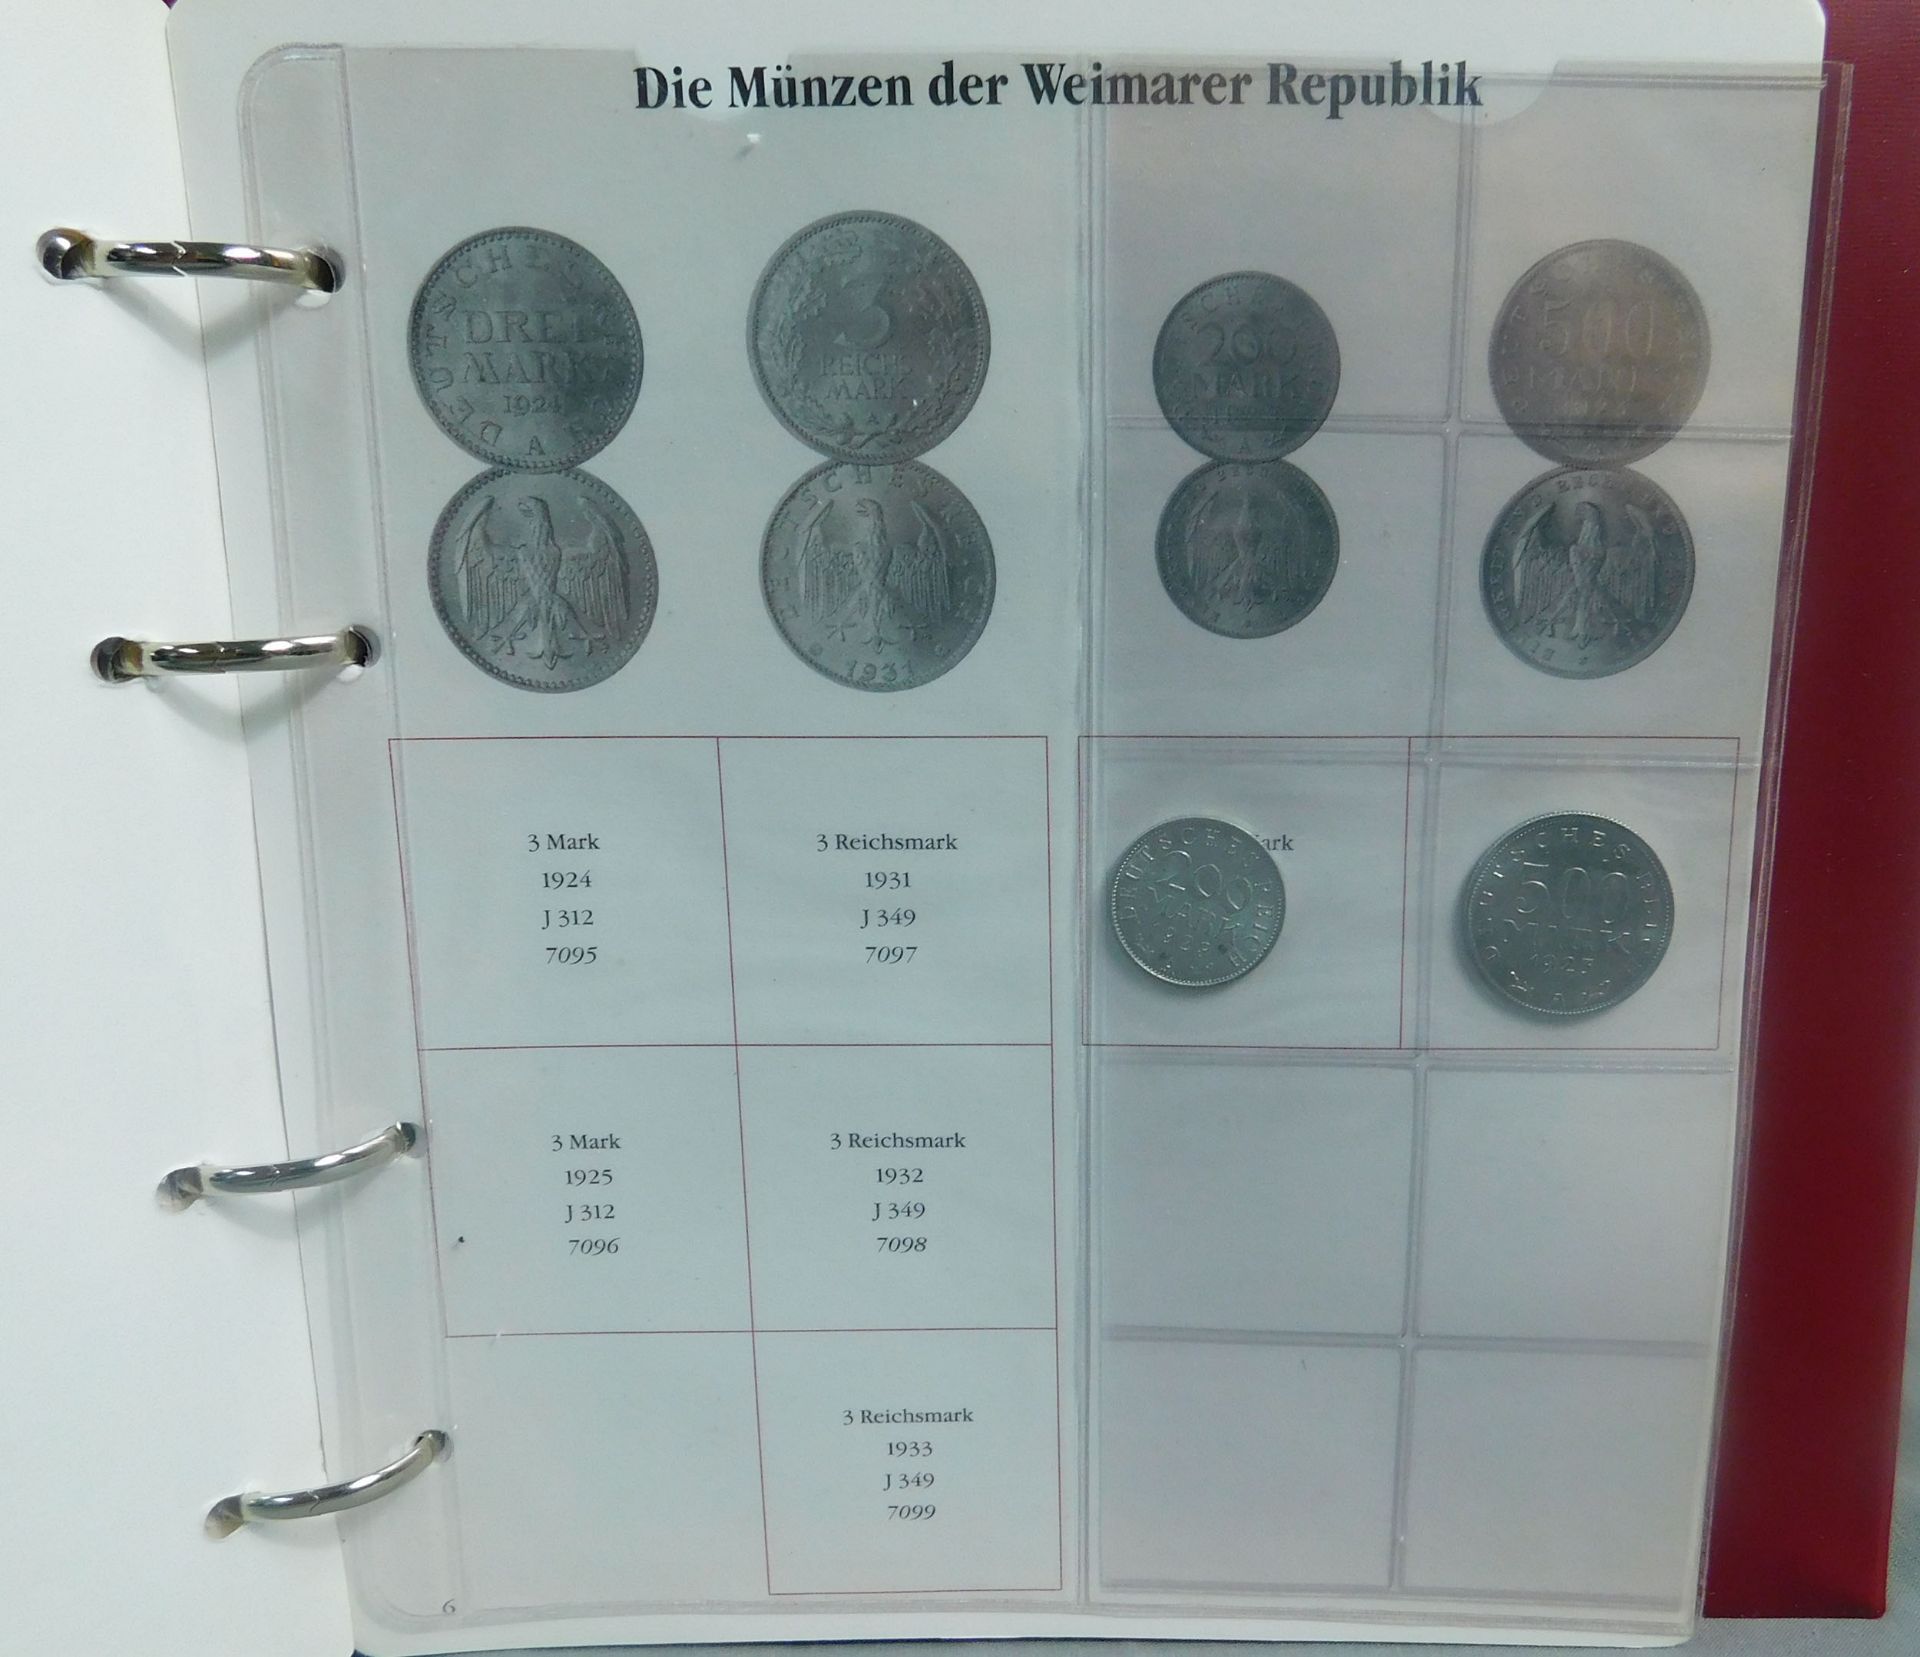 Münzalbum. Mit diversen kleinen Münzen. Weimarer Republik. - Bild 10 aus 16